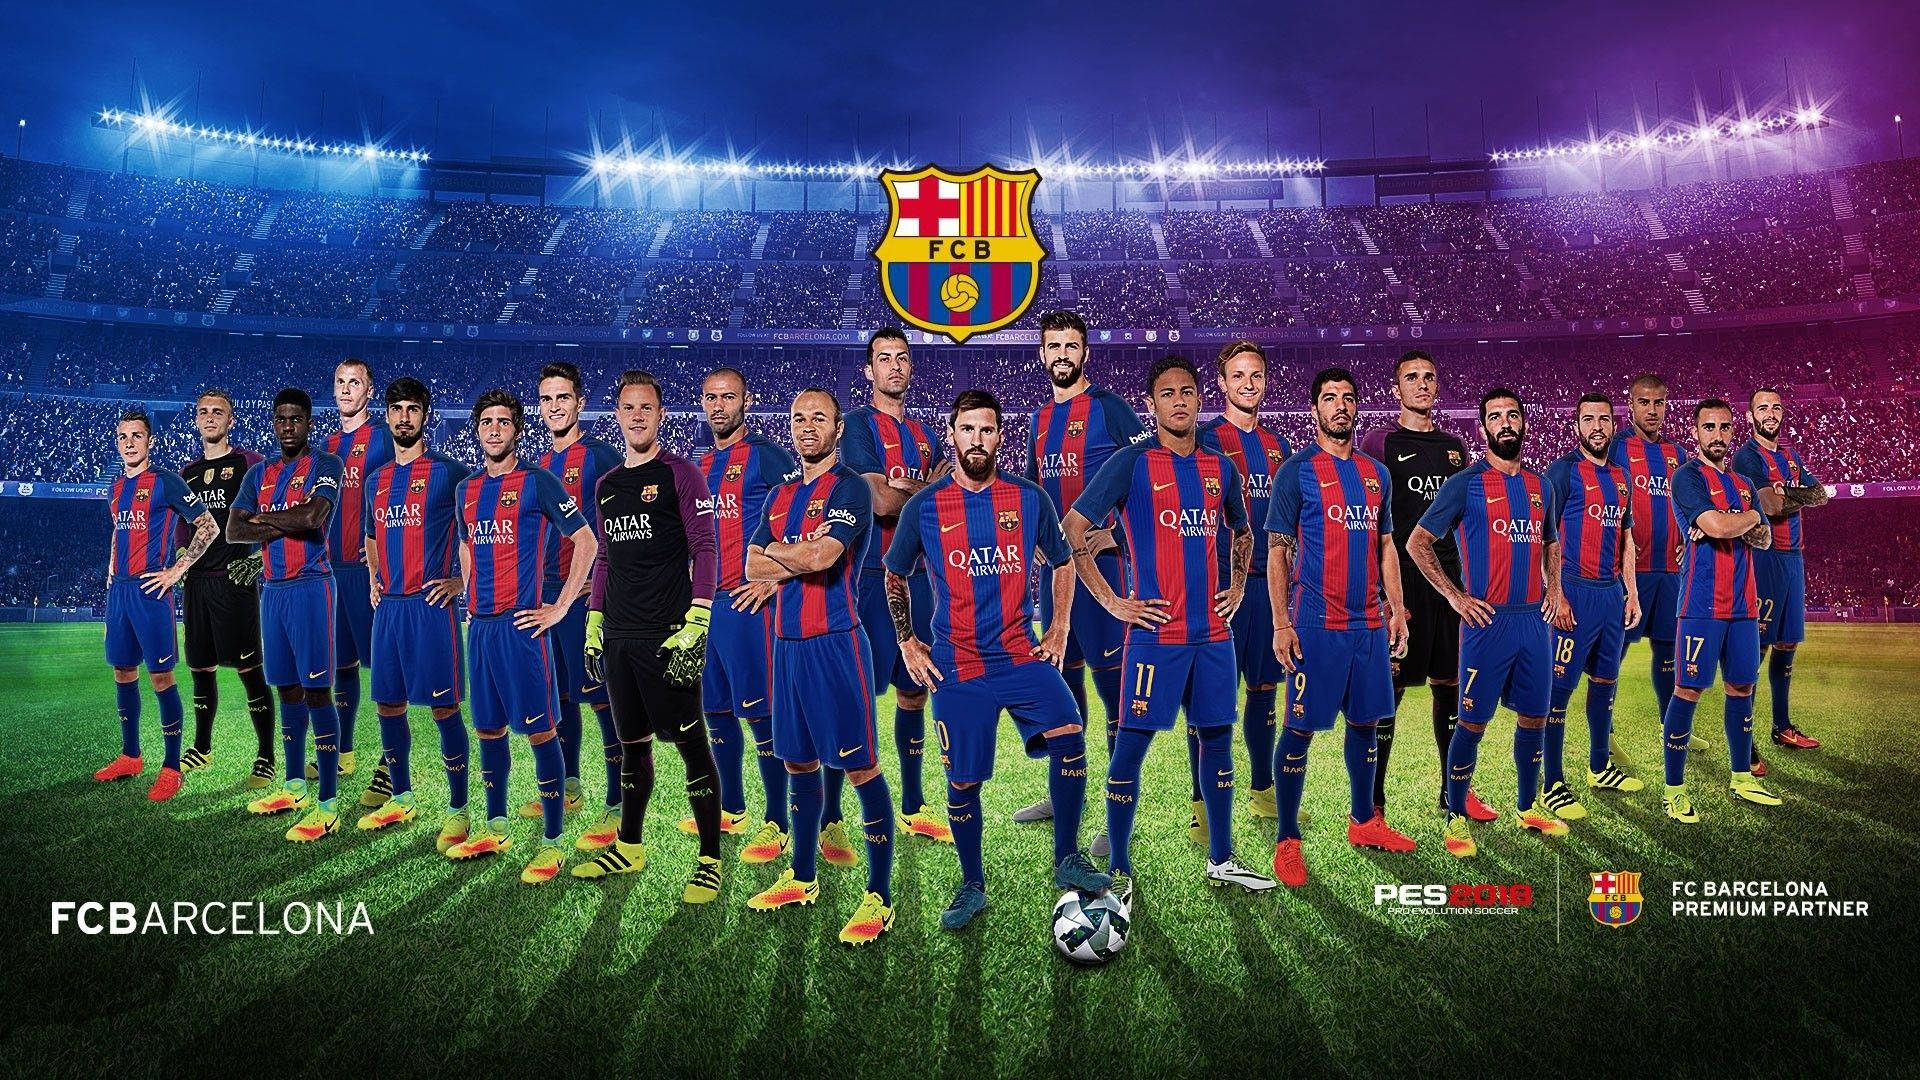 Ready to Win: The Fierce FC Barcelona Soccer Team Wallpaper